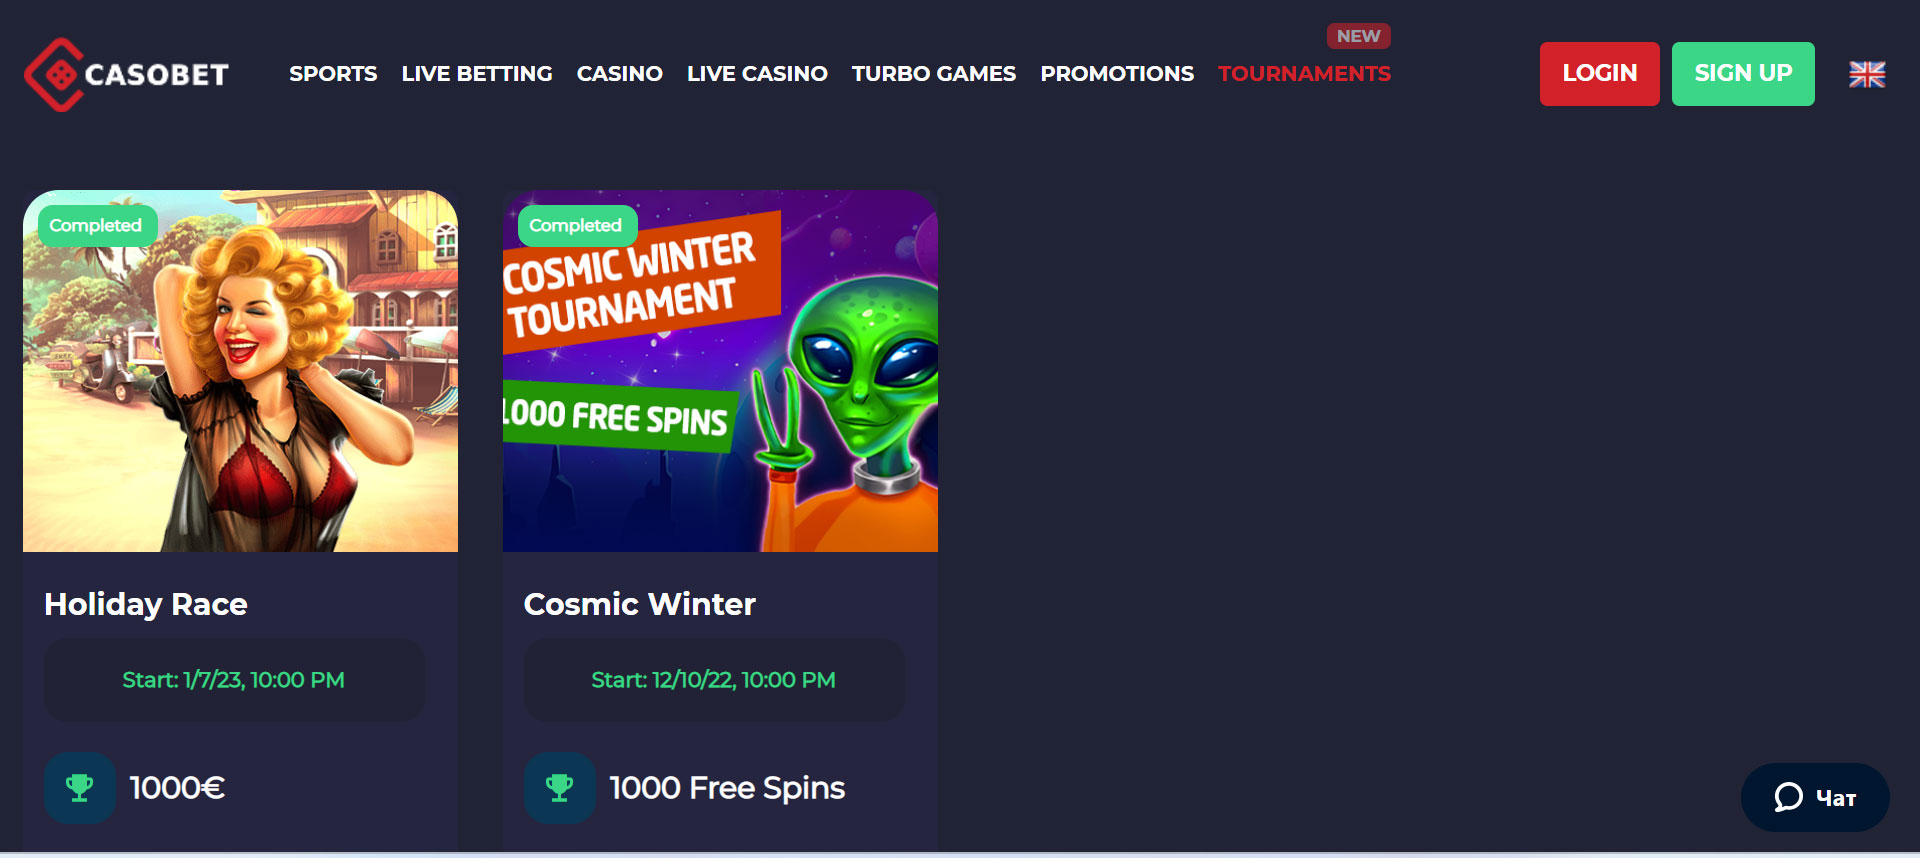 Casobet Casino Tournaments